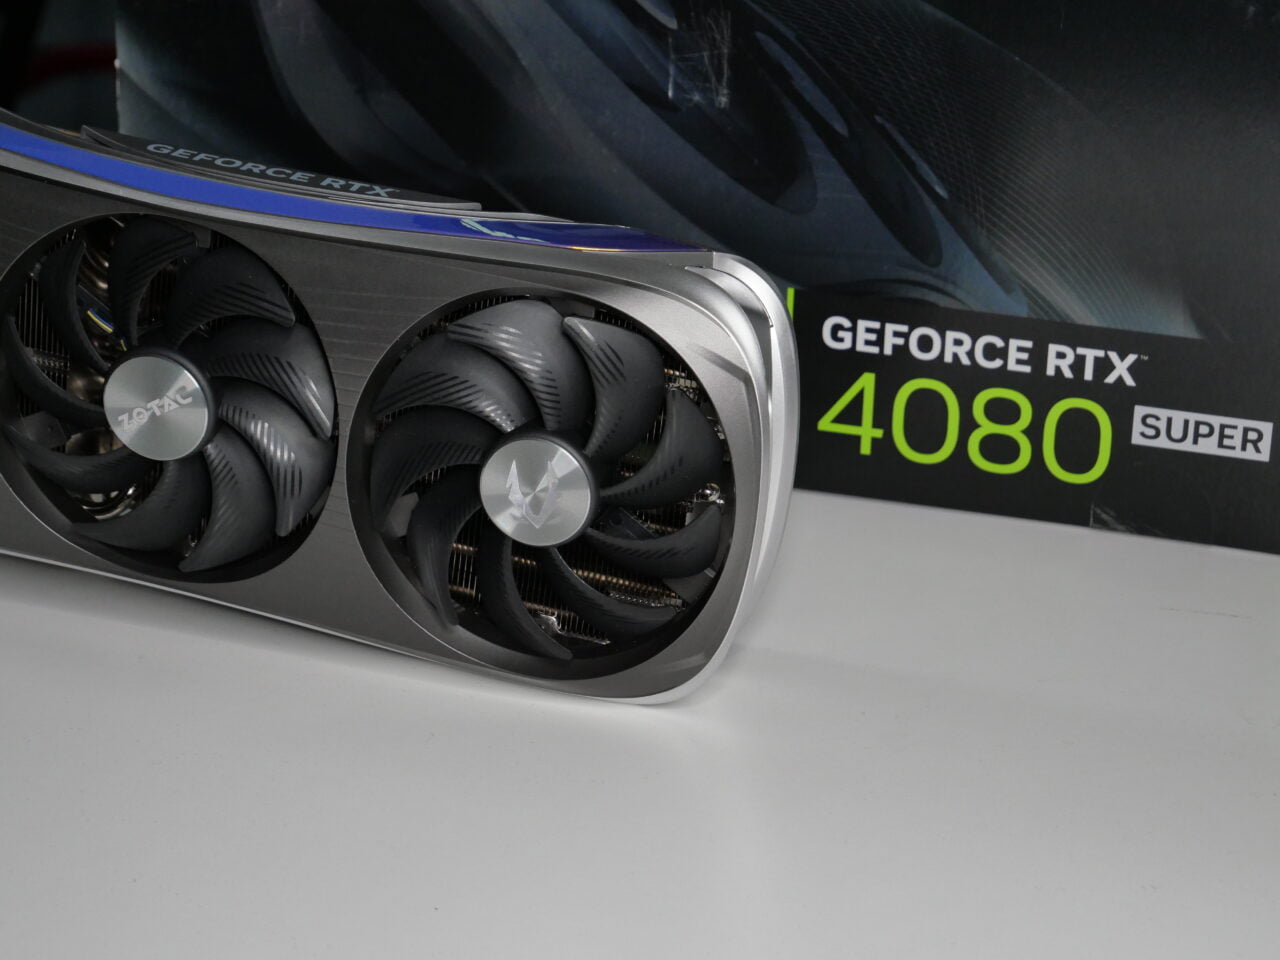 Karta graficzna Zotac GeForce RTX 4080 Super i jej opakowanie w tle.